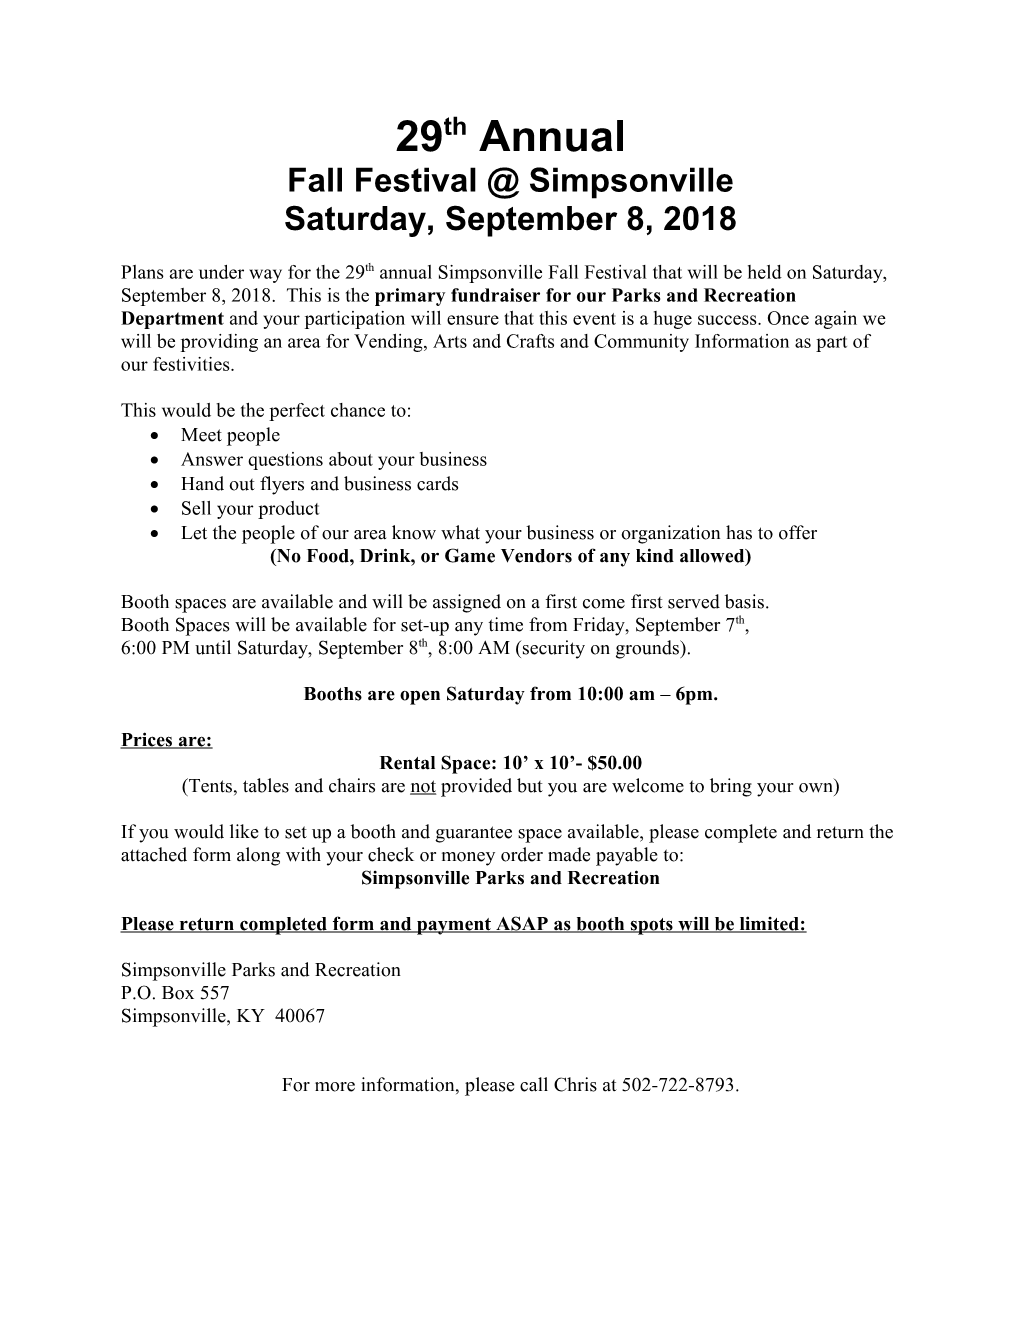 Fall Festival Simpsonville